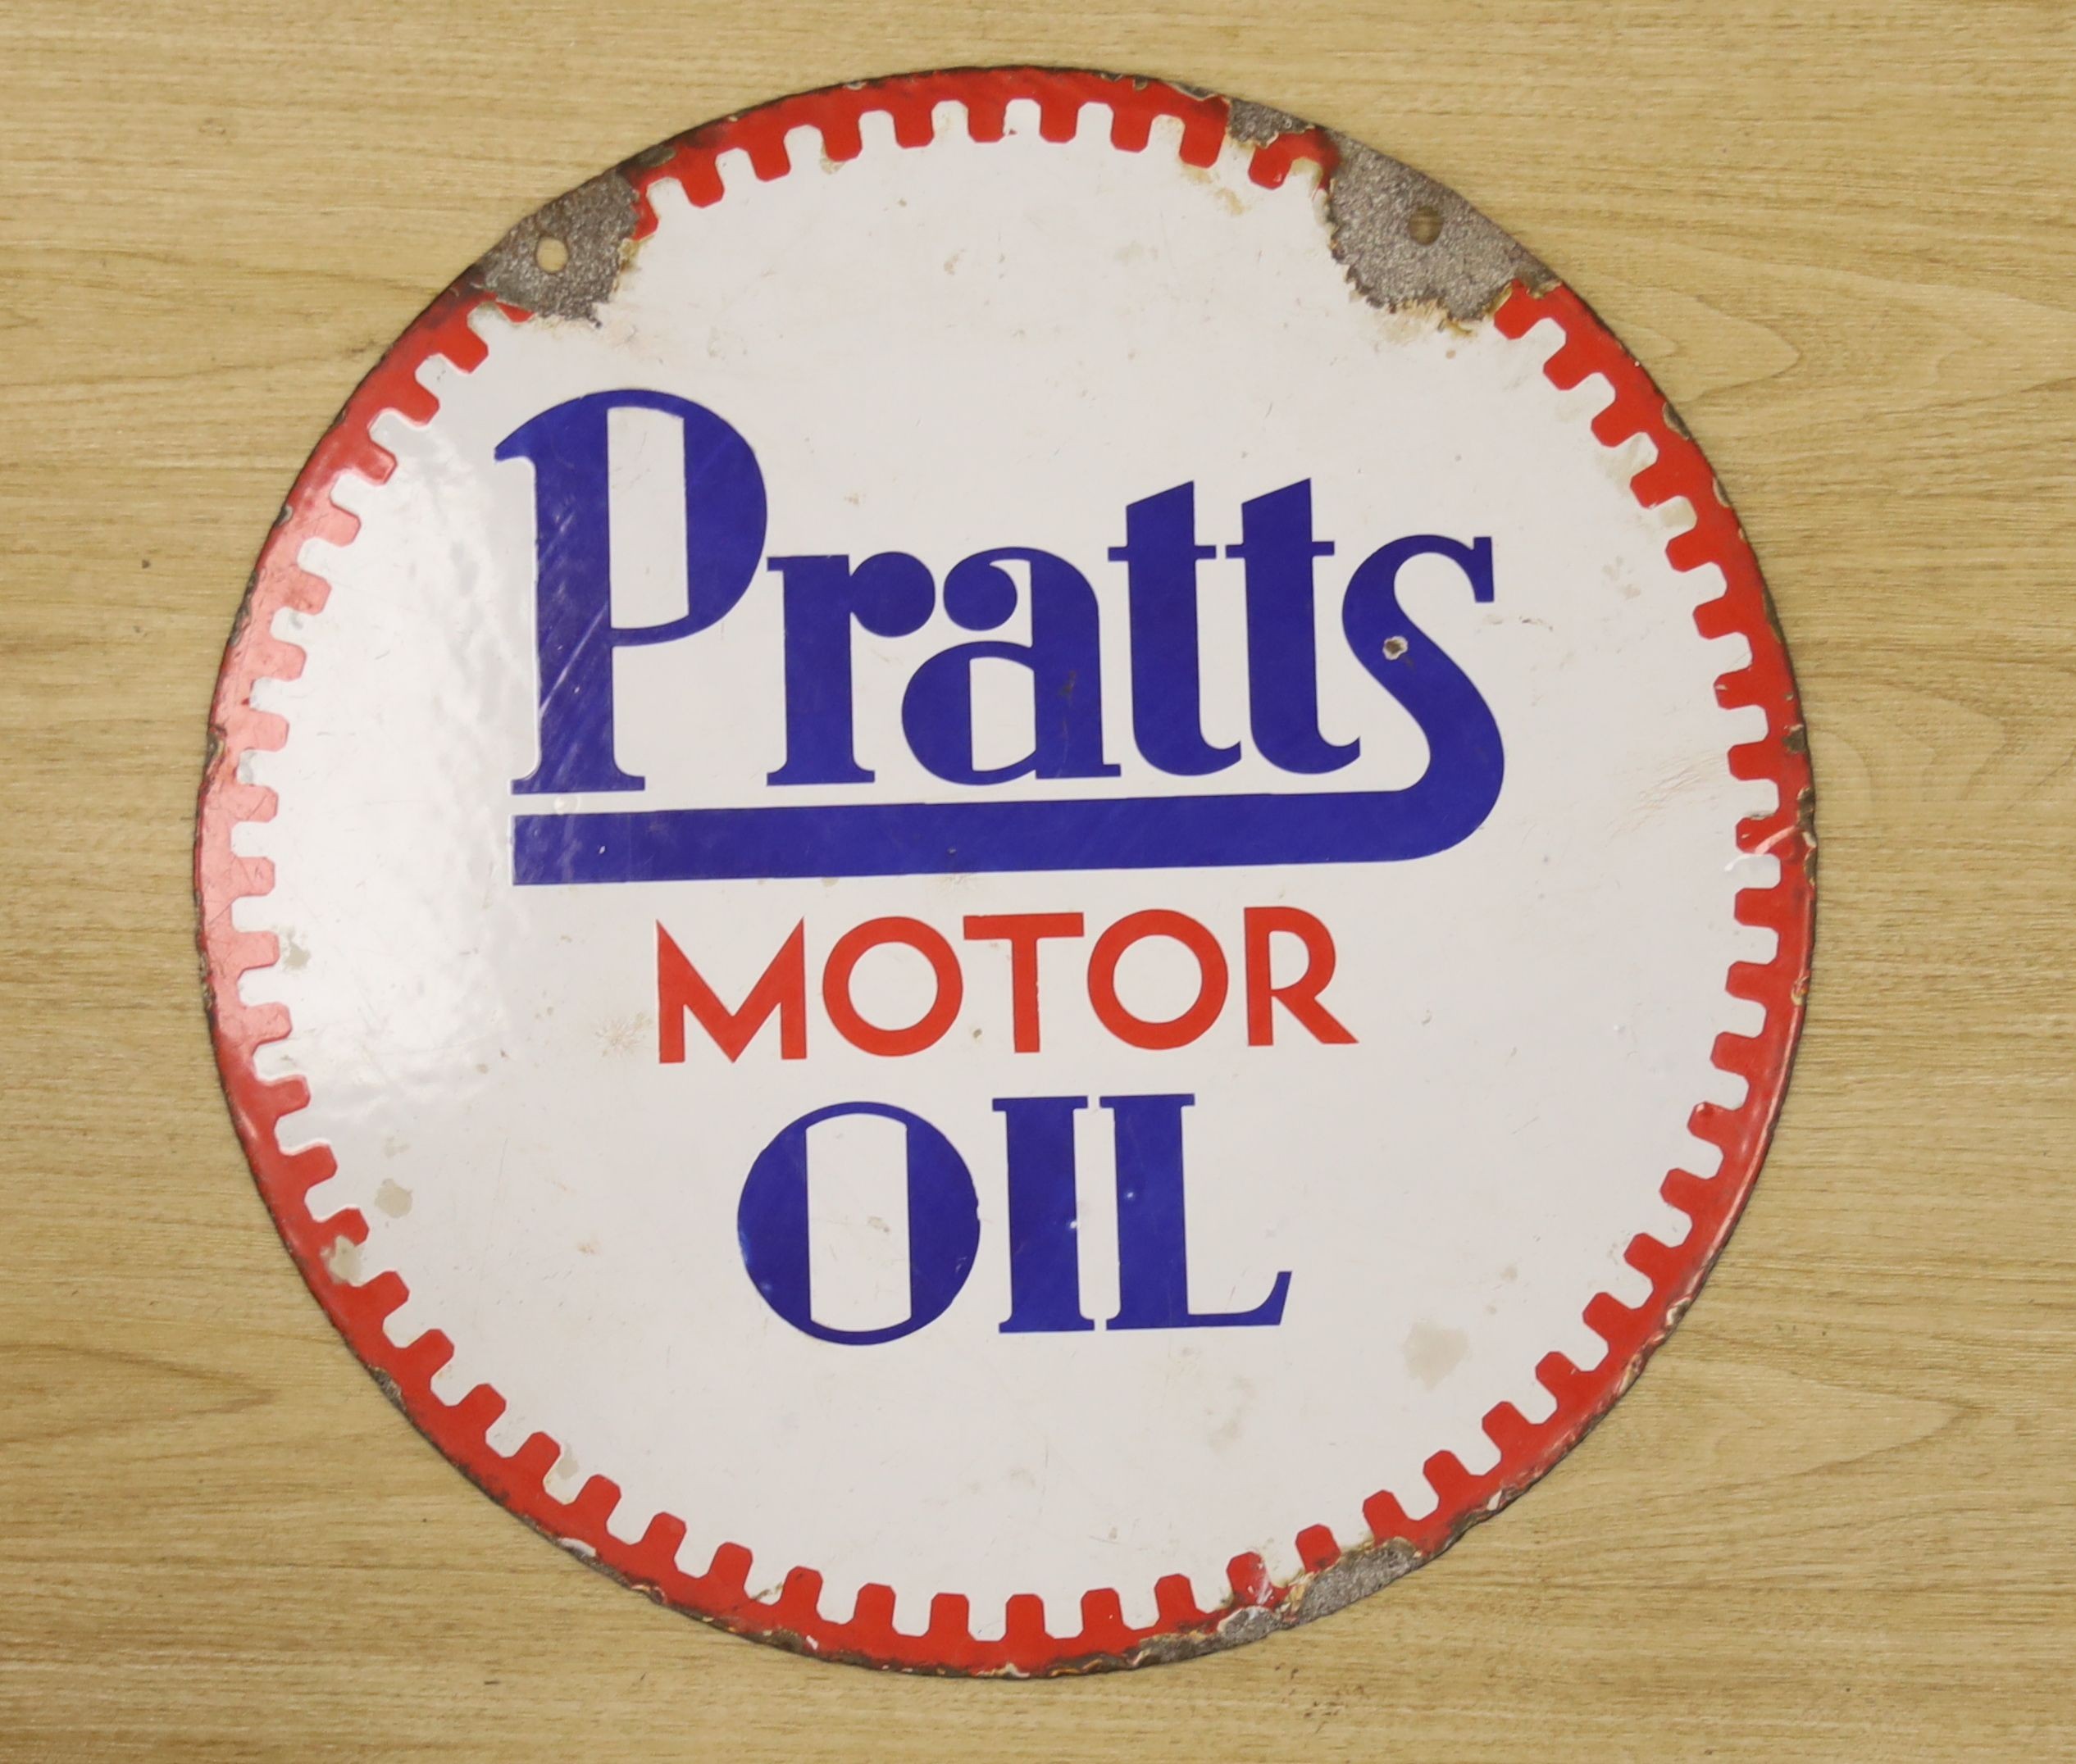 Double sided enamel sign ‘Pratt’s motor oil’ 53cm